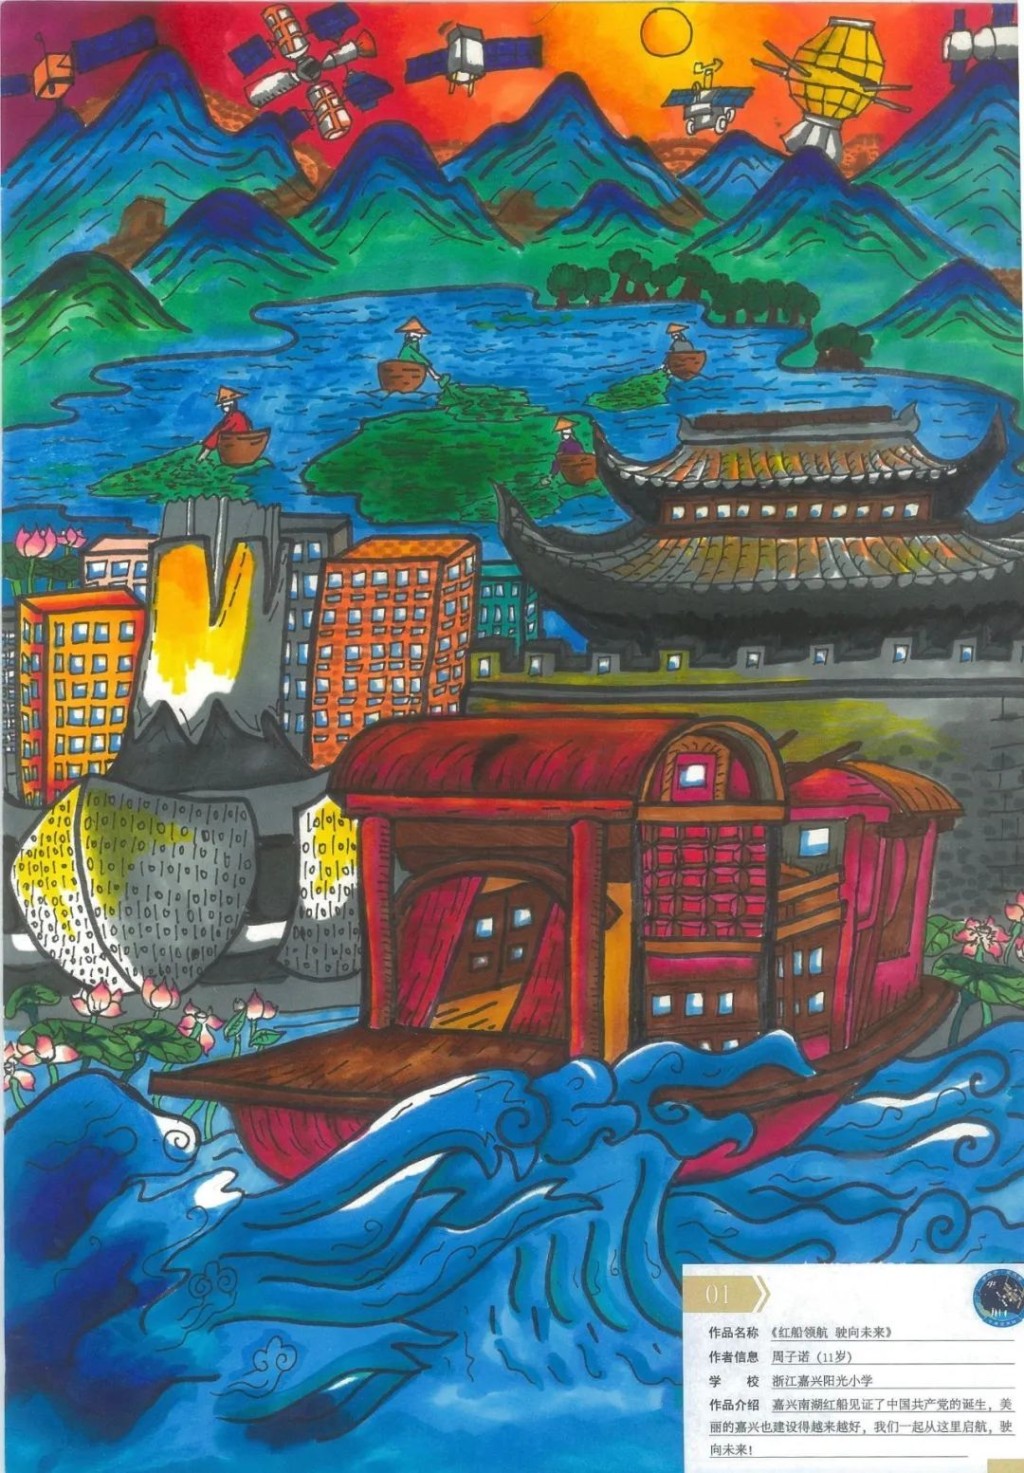 来自浙江周子诺的作品《红船领航 驶向未来》